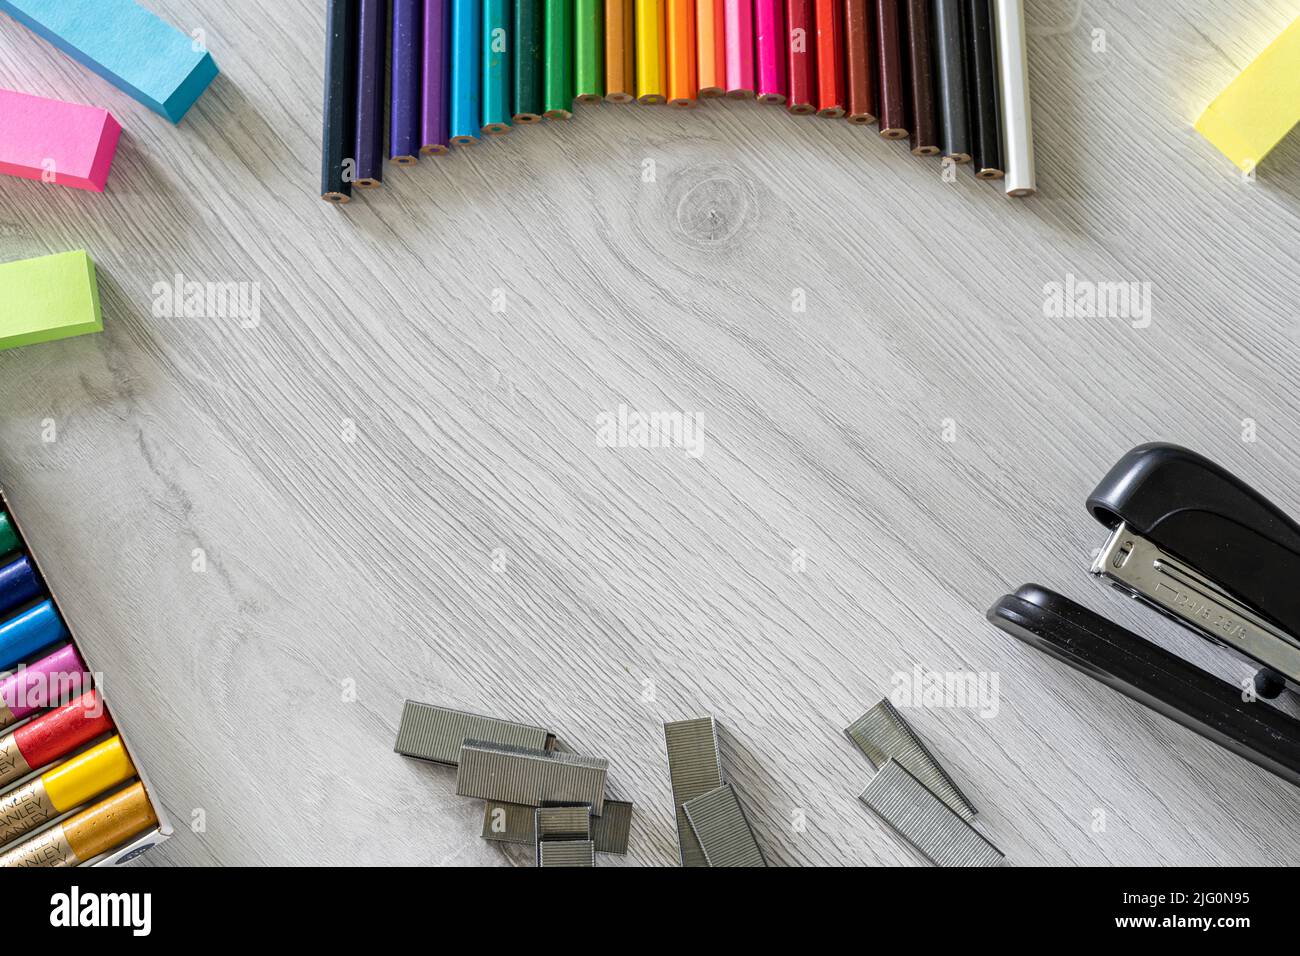 Ein Tisch voller farbiger Schulstifte, die einen Regenbogen bilden, und Vorräte für Schulkinder Stockfoto